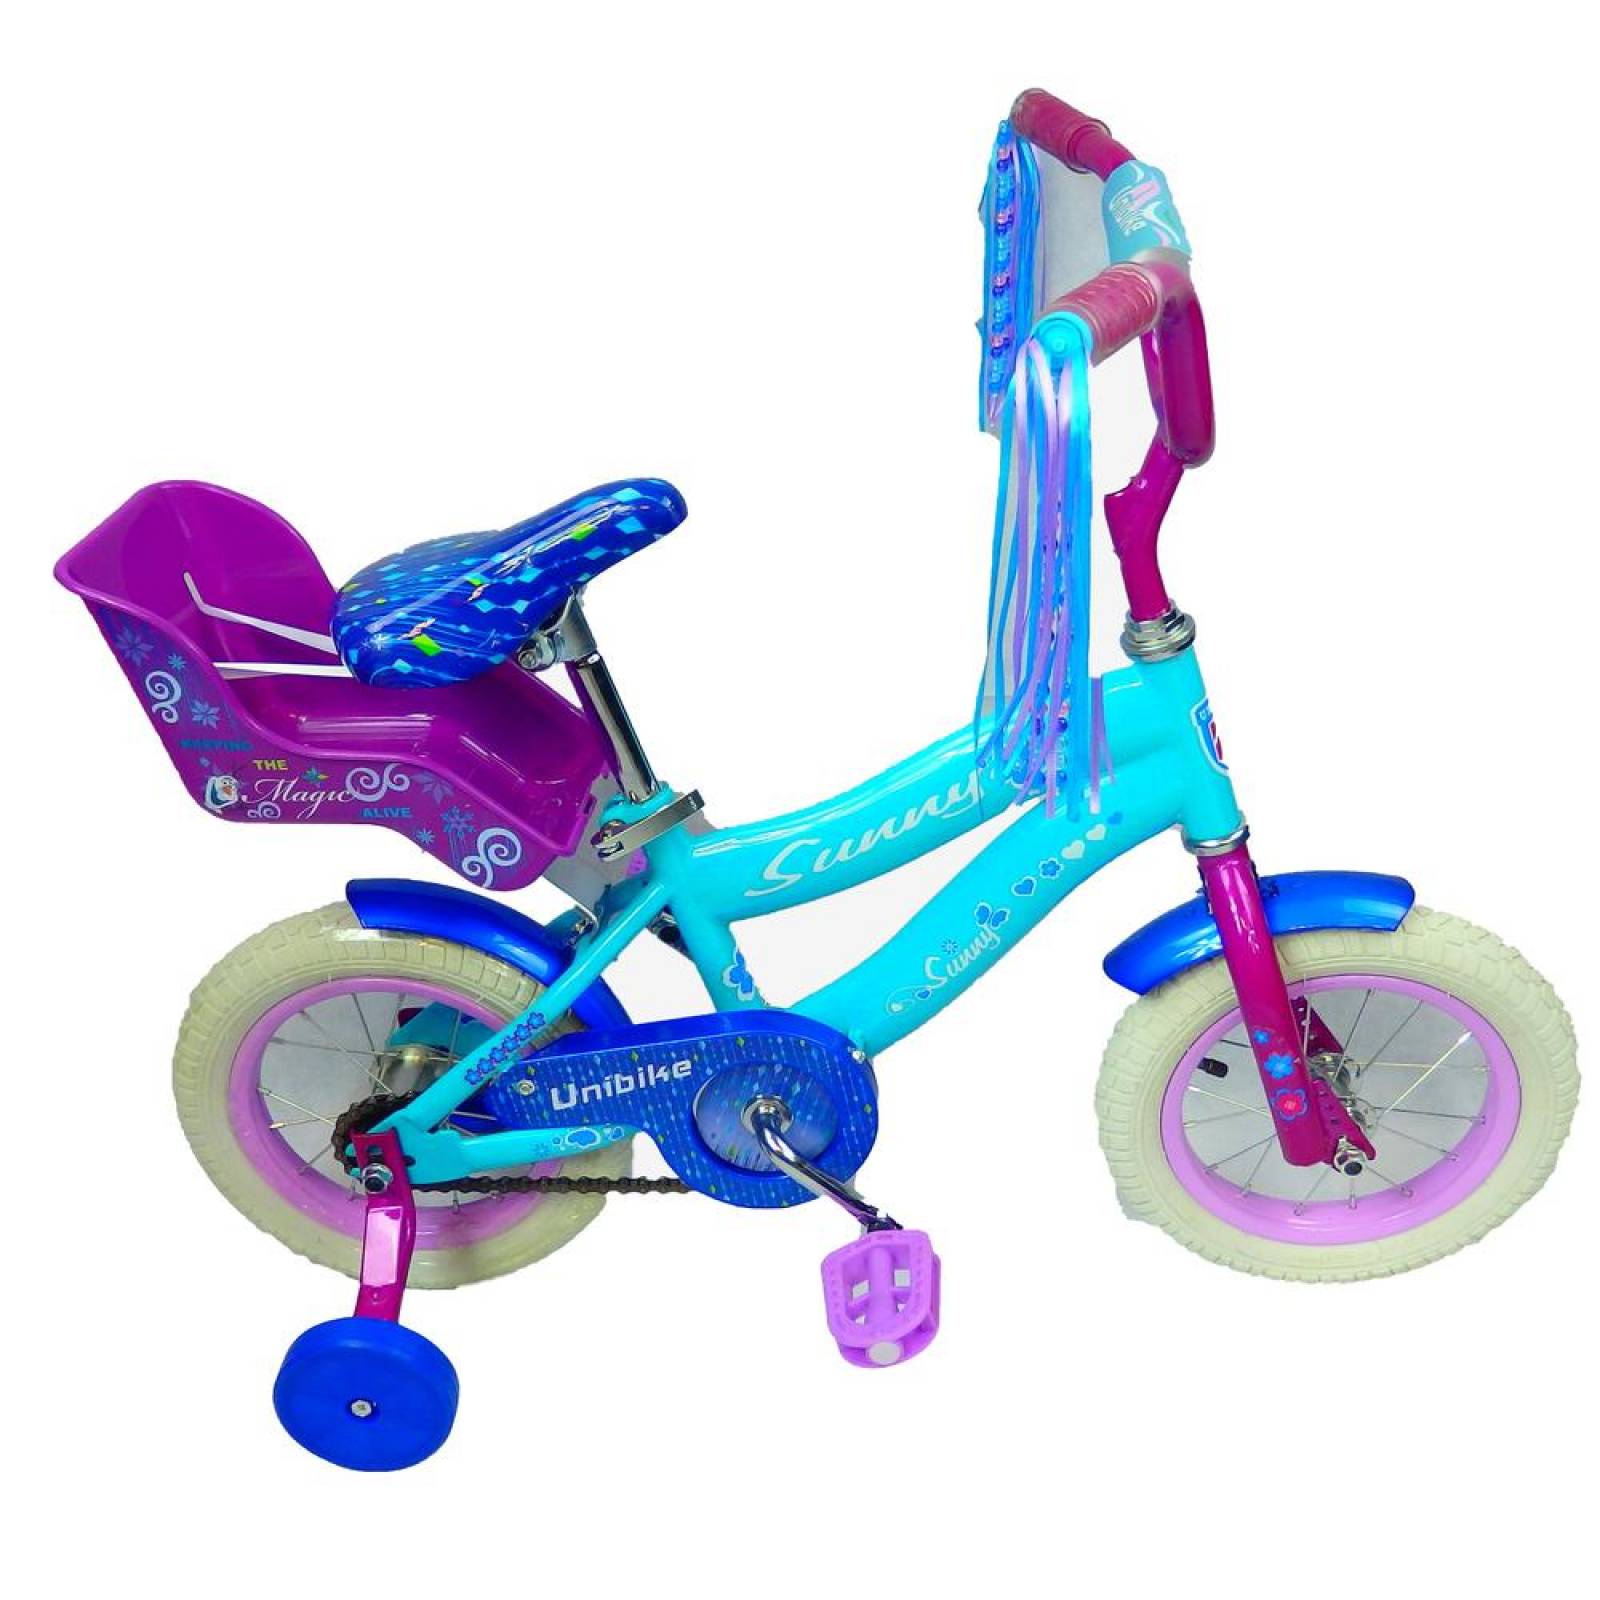 Bicicleta Infantil r12 Rodada para niña Barata con Portamuñeca Azul cielo